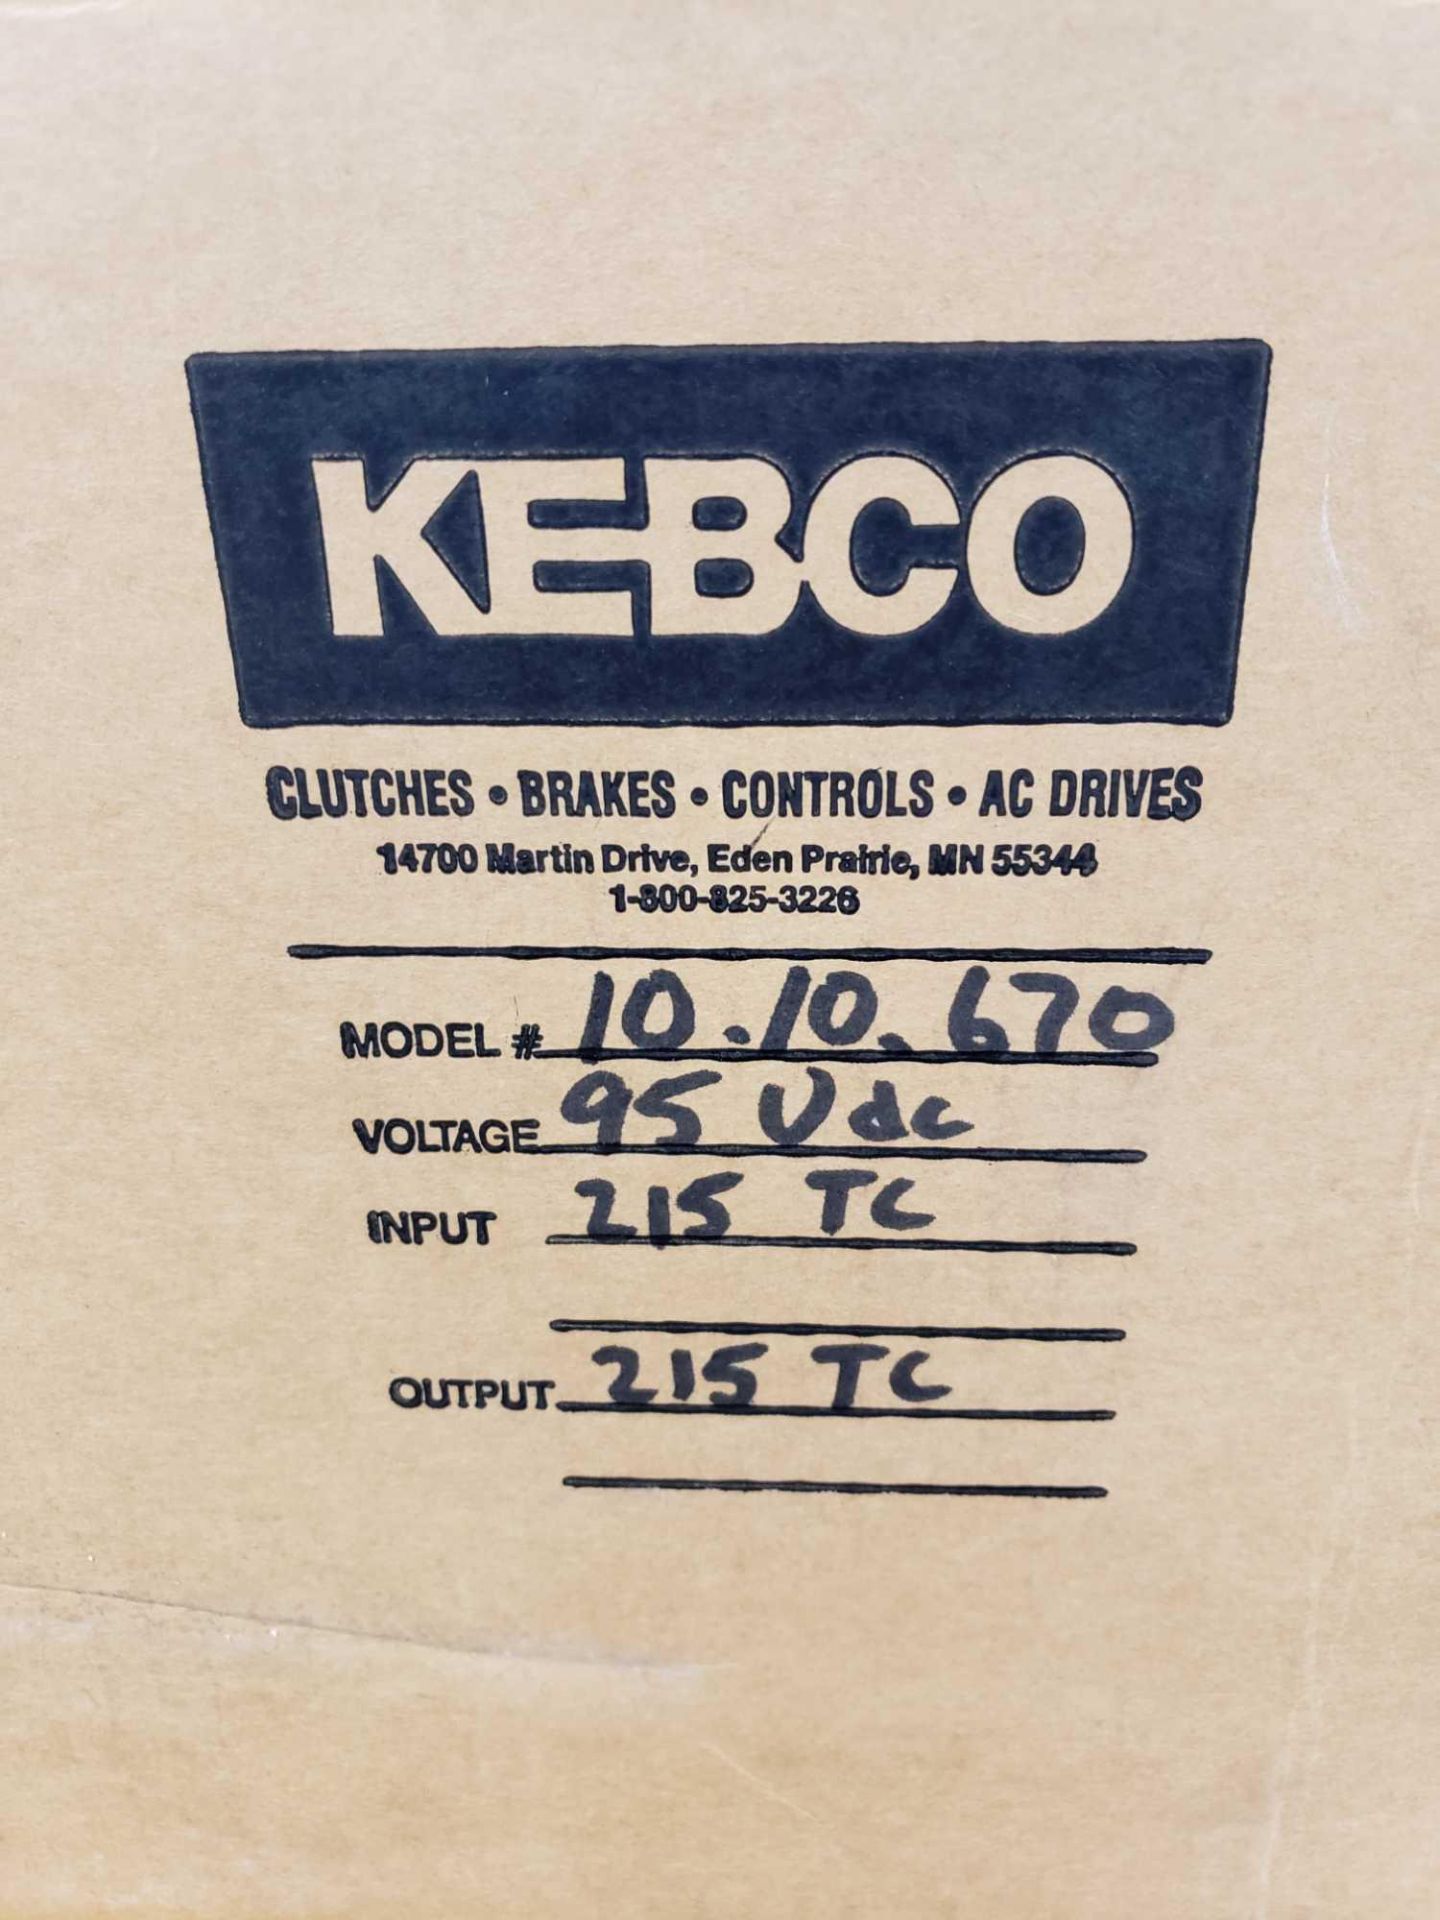 KEB Combibox model 10.10.670, 95vdc, input 215tc, output 215tc. New in box. - Image 4 of 4